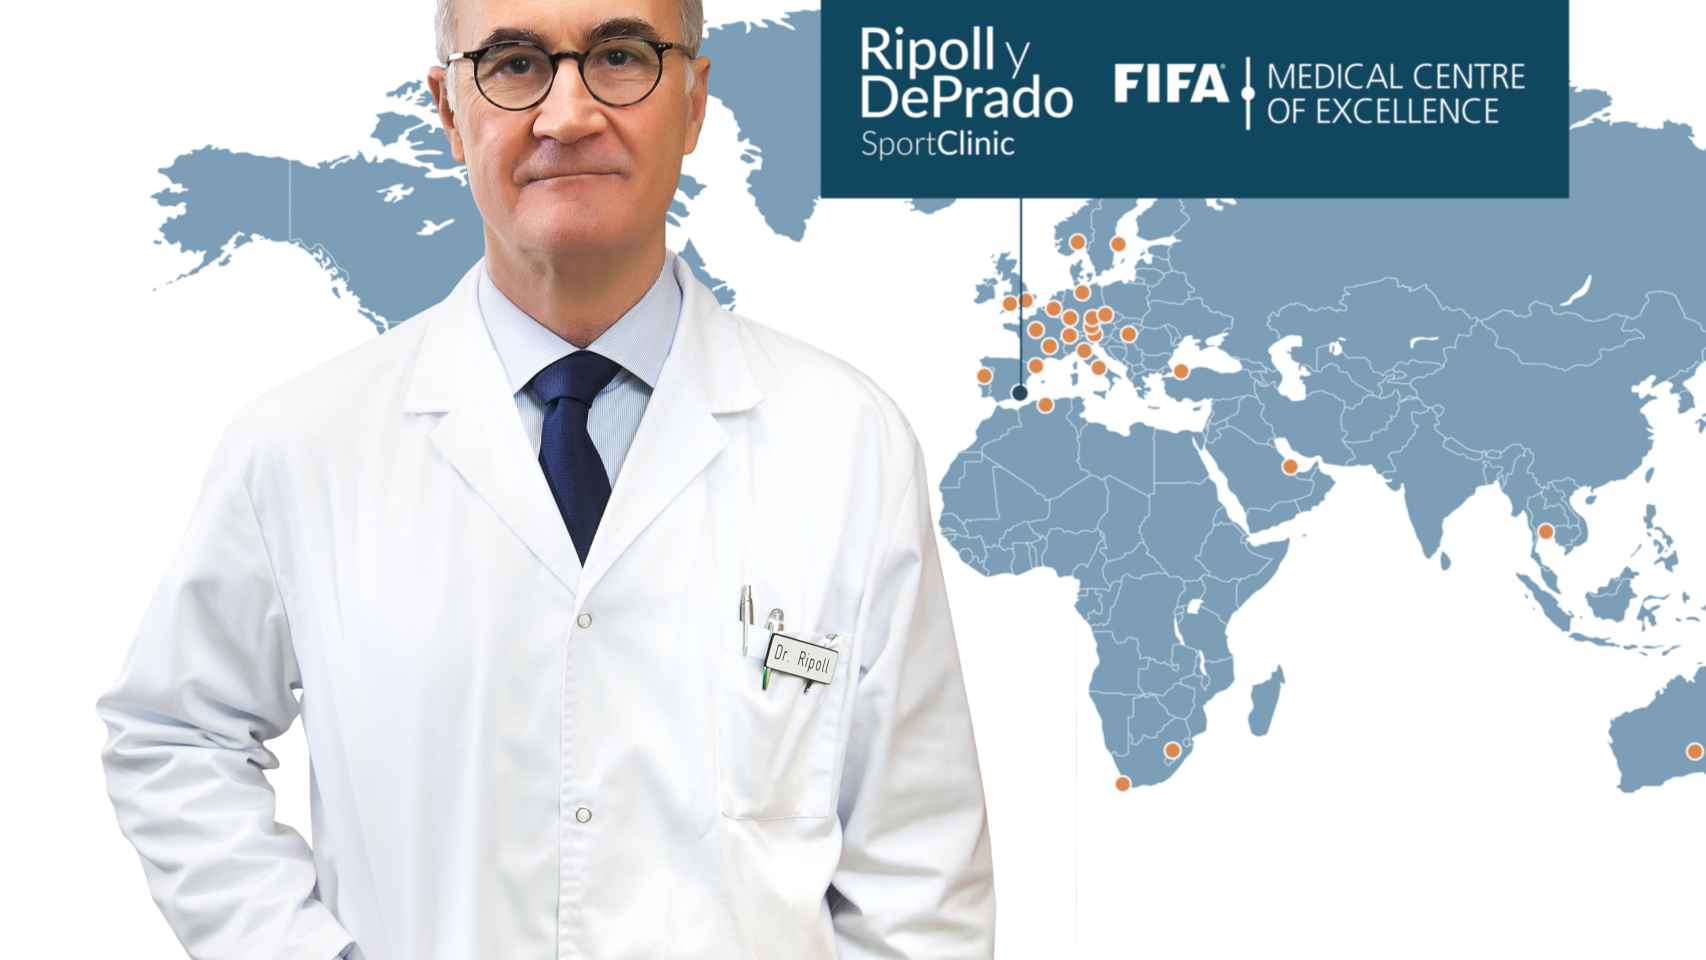 La FIFA ha reconocido la excelencia de la labor que realiza el doctor Ripoll, junto al doctor De Prado, en sus centros SportClinic.